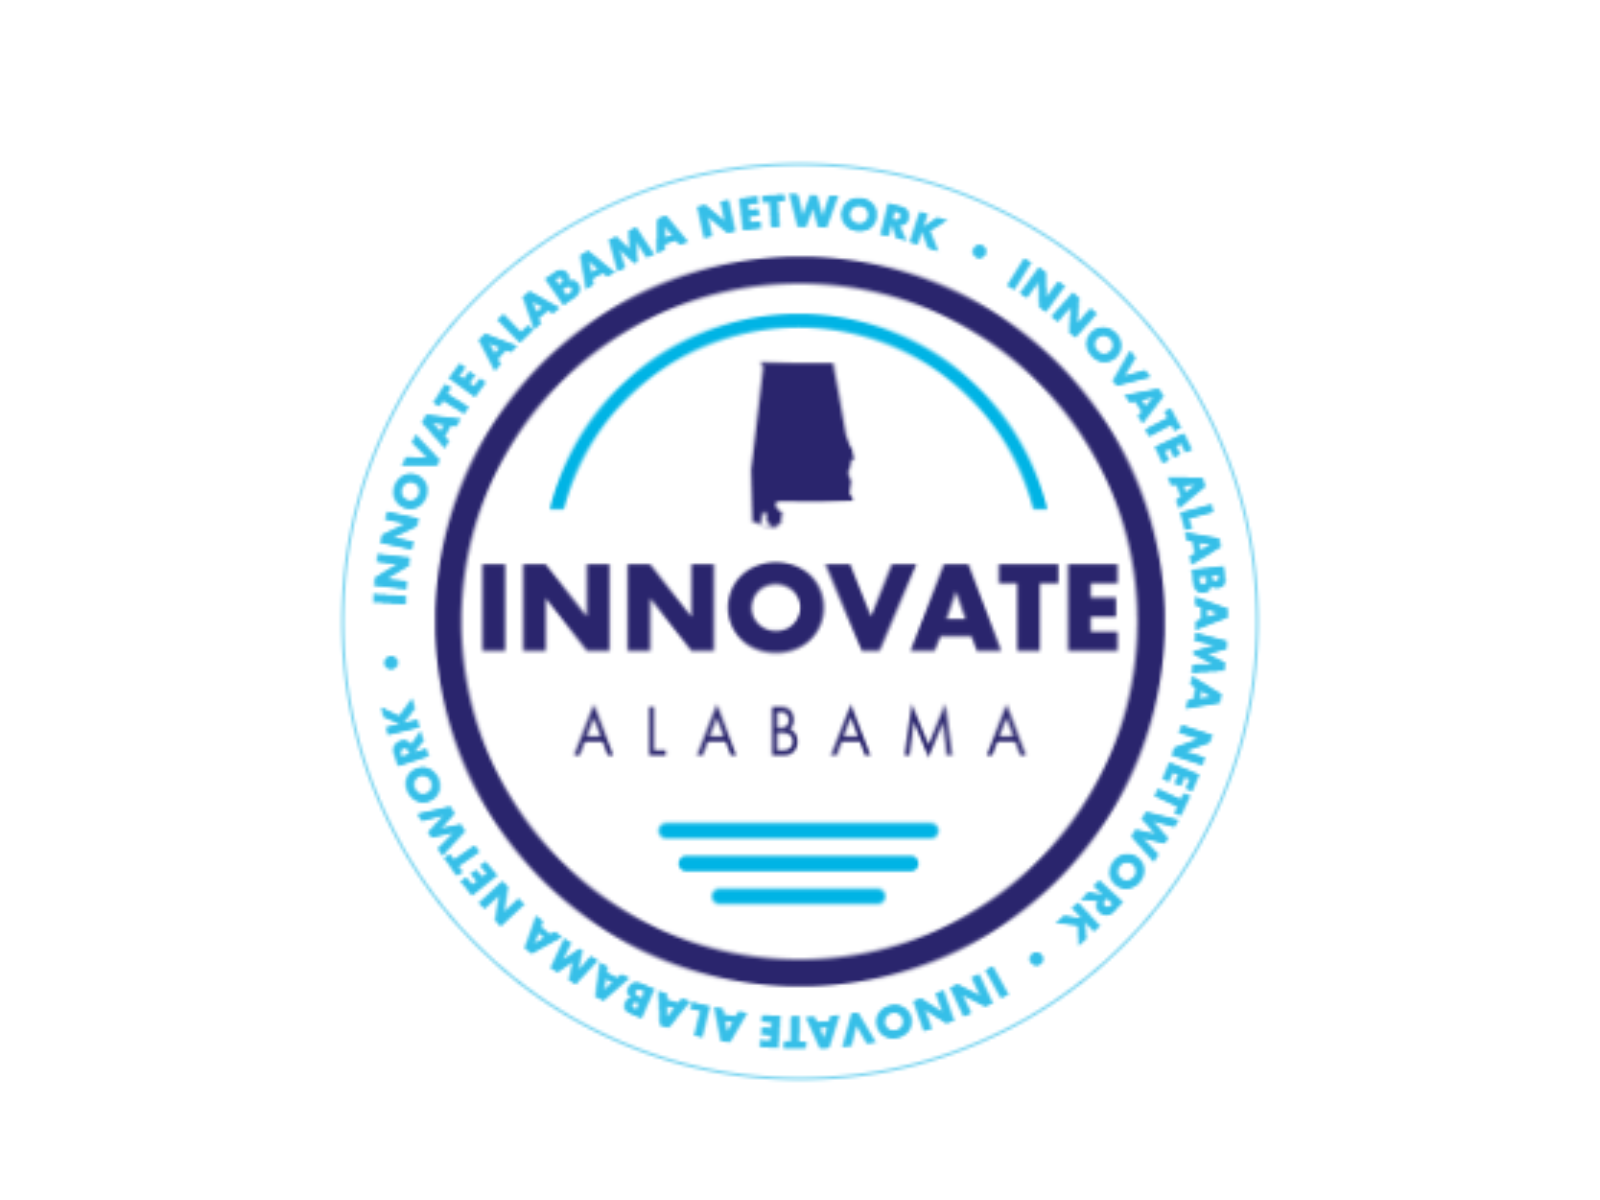 Innovate Alabama Designation